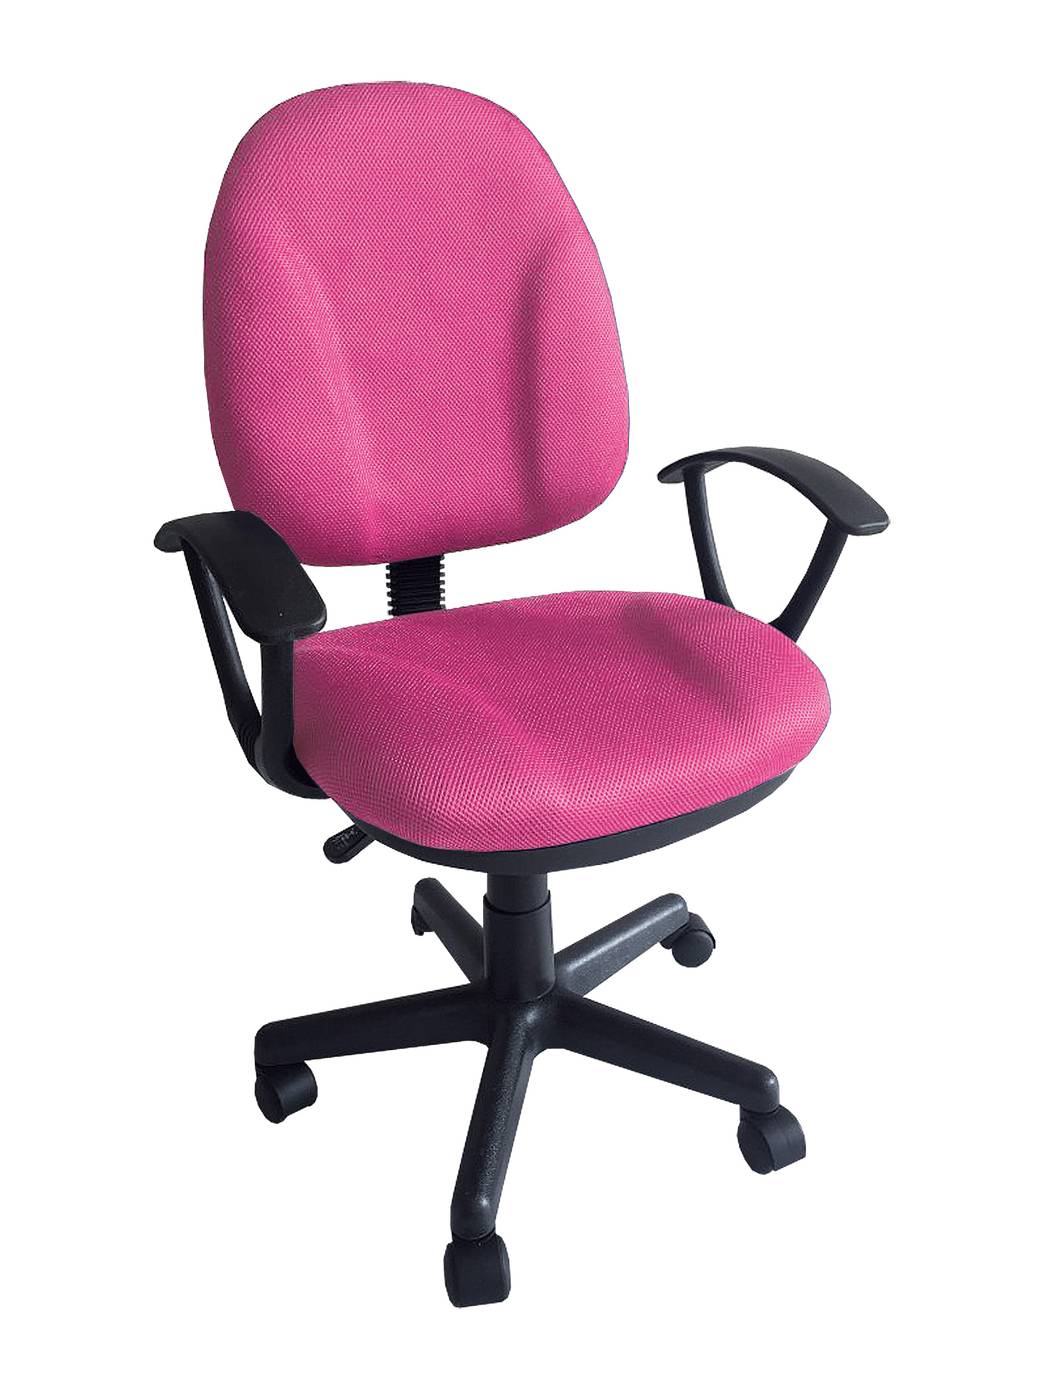 Pack mesa y silla de escritorio Studio rosa